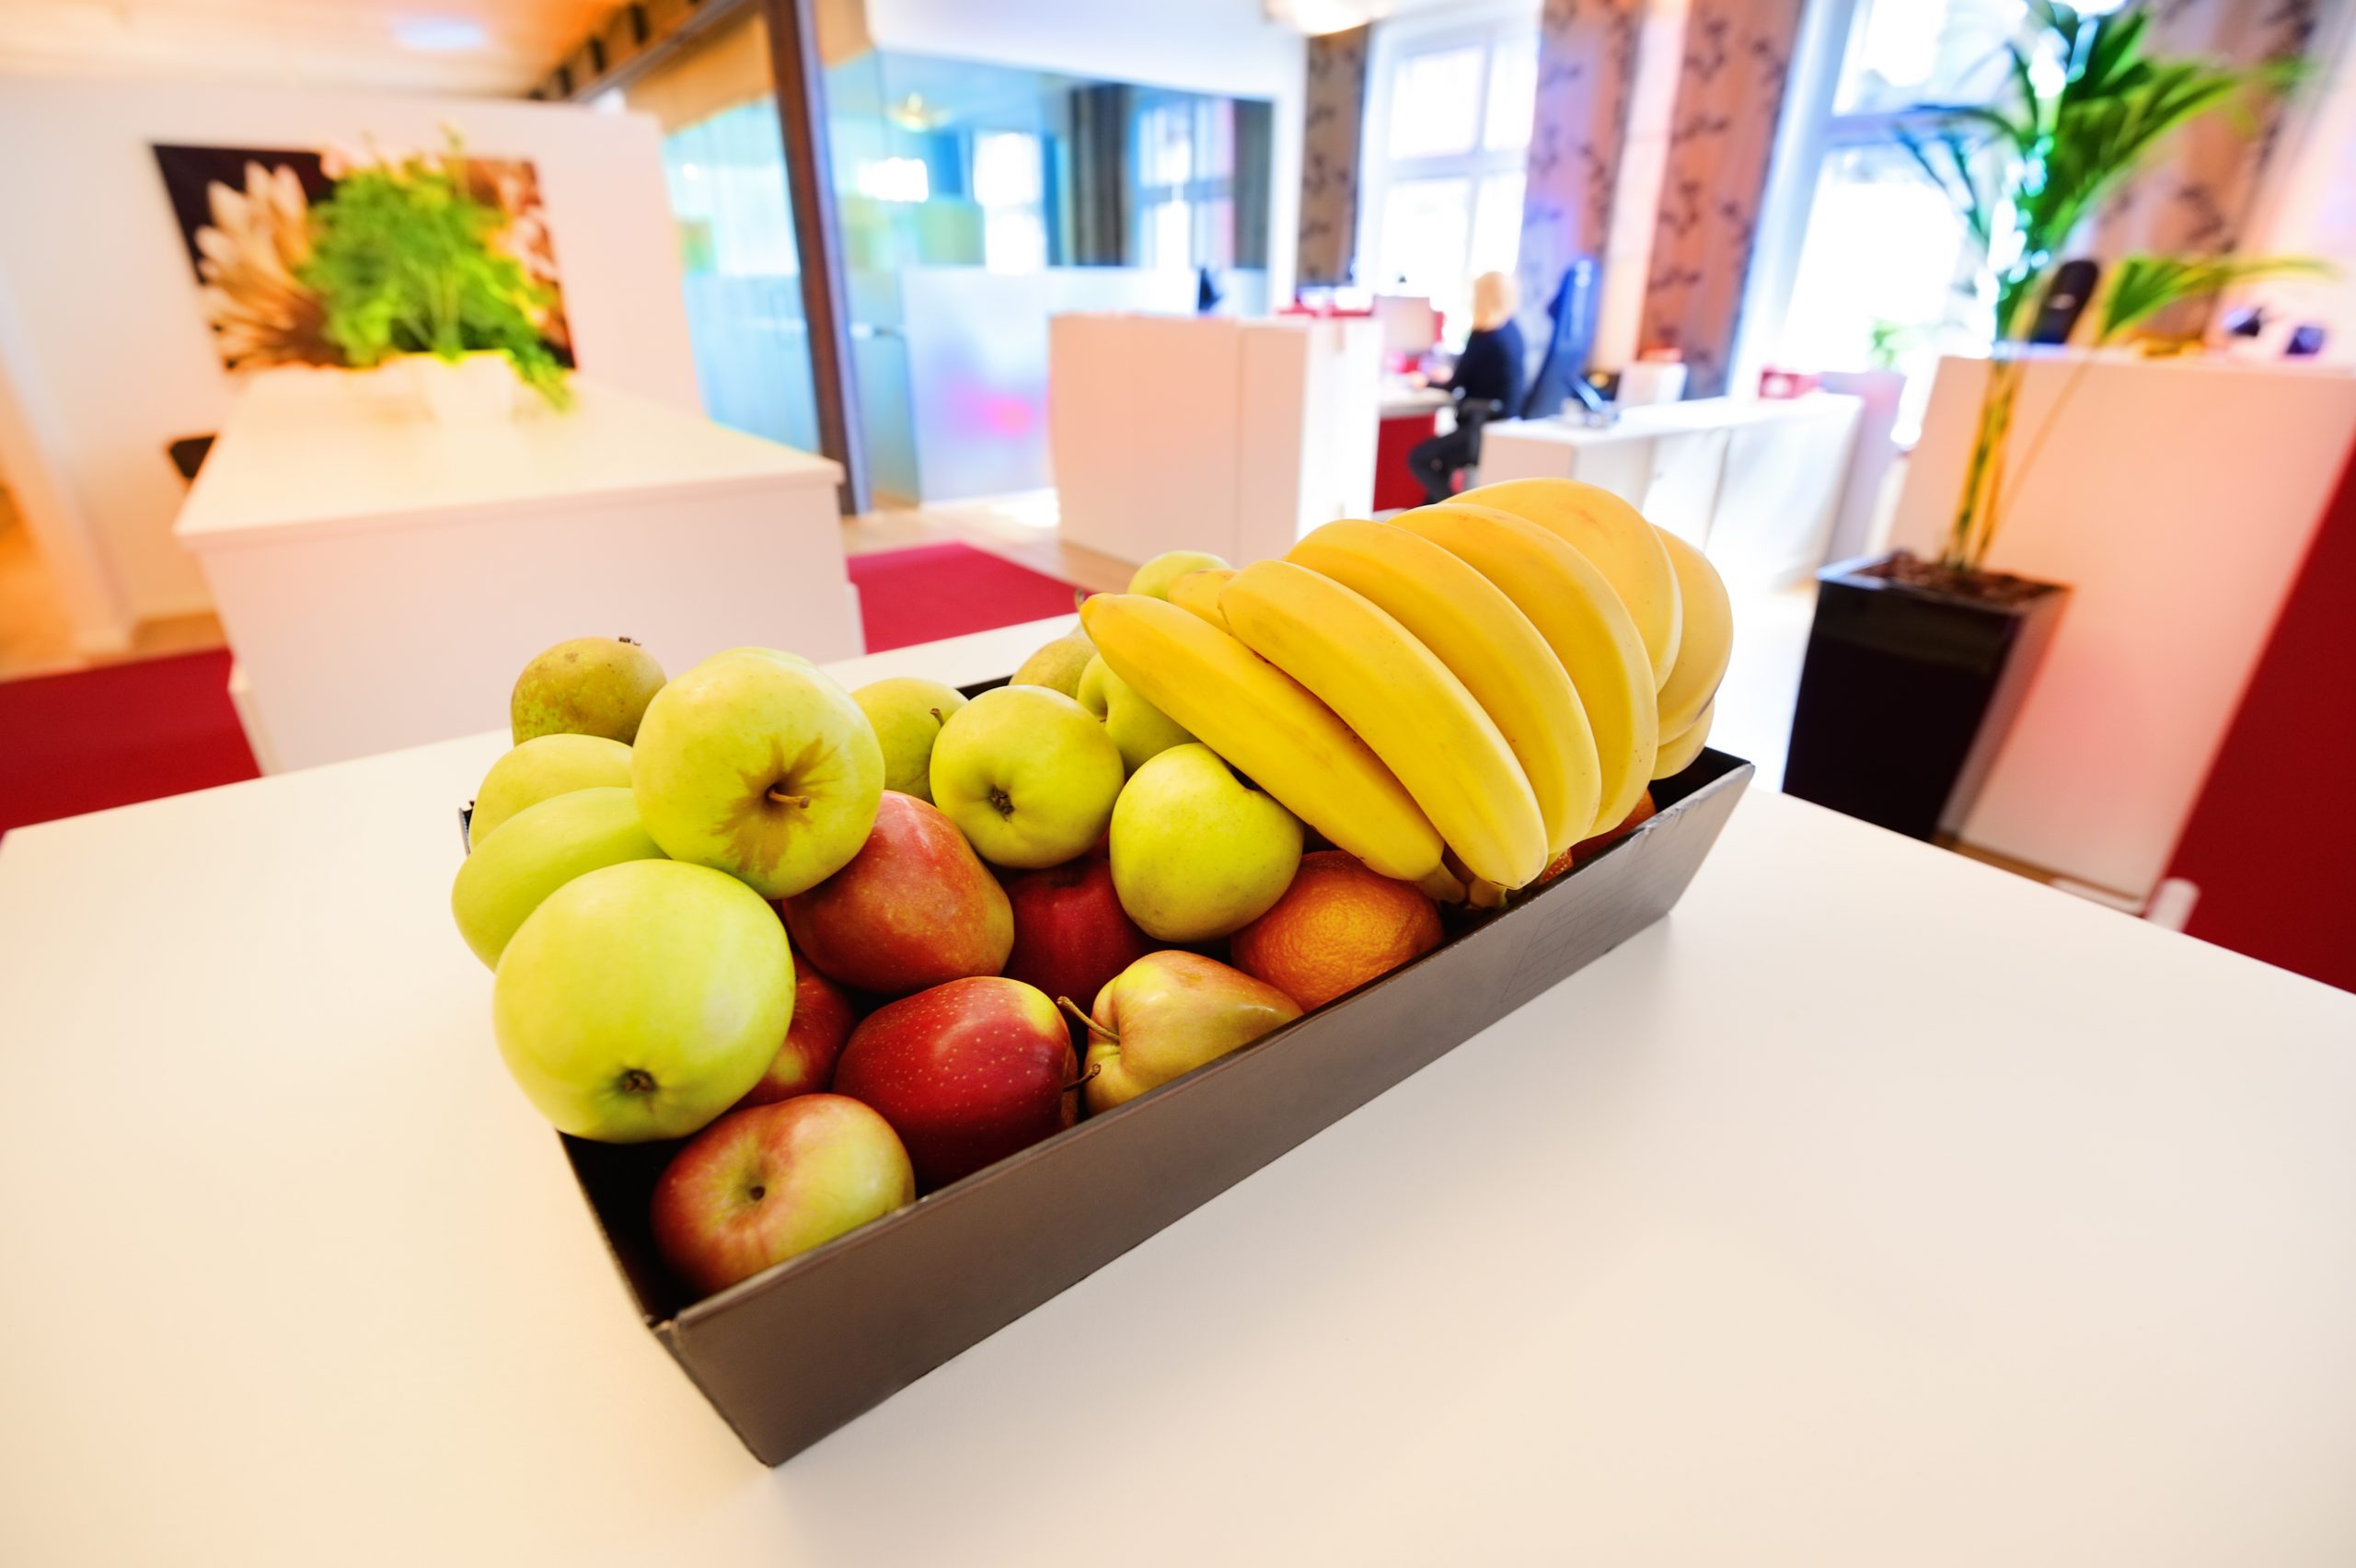 Fruit Basket in an Office